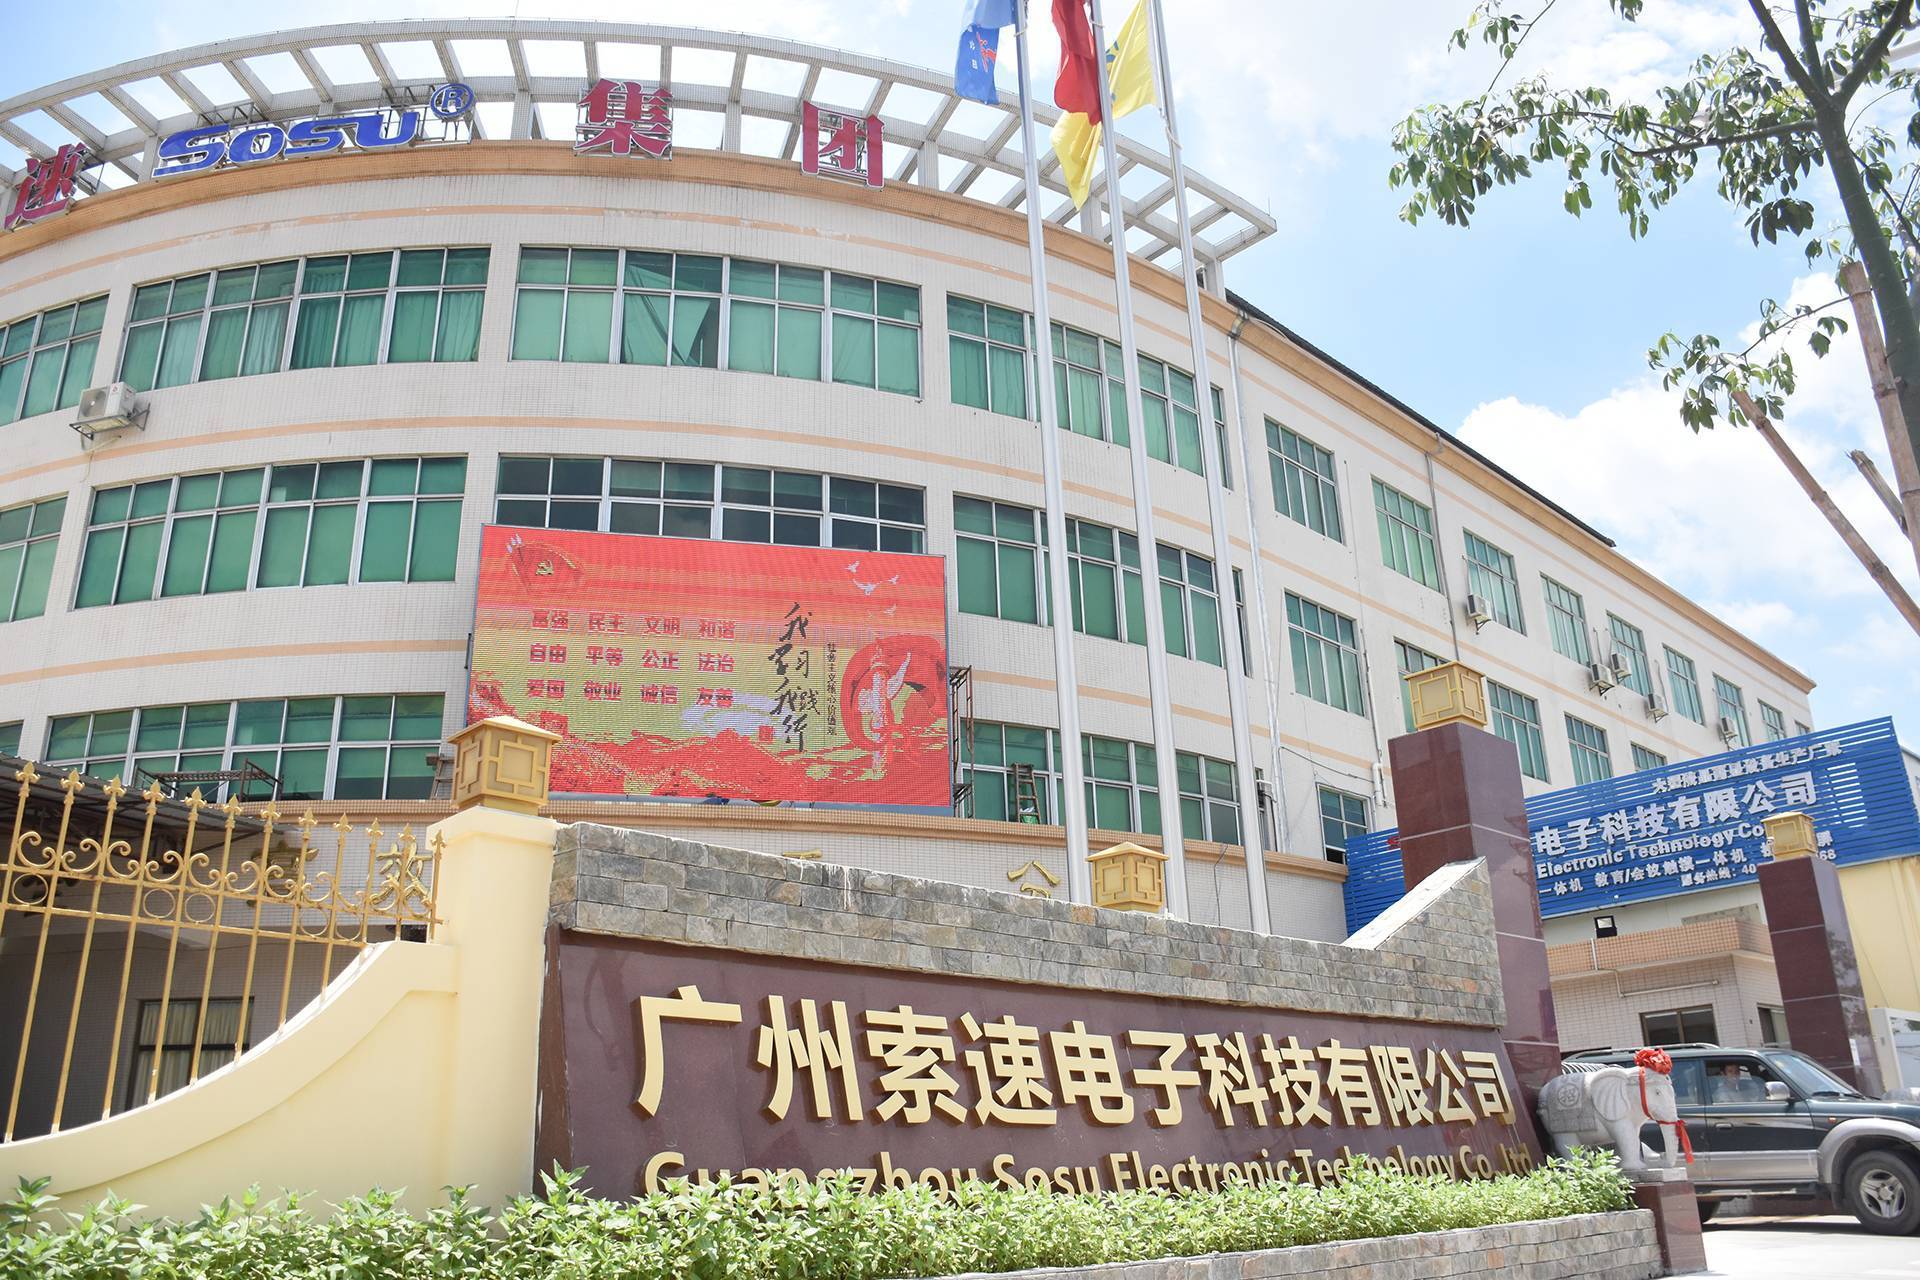   Guangzhou Aoyuan Electronic Technology Co., Ltd